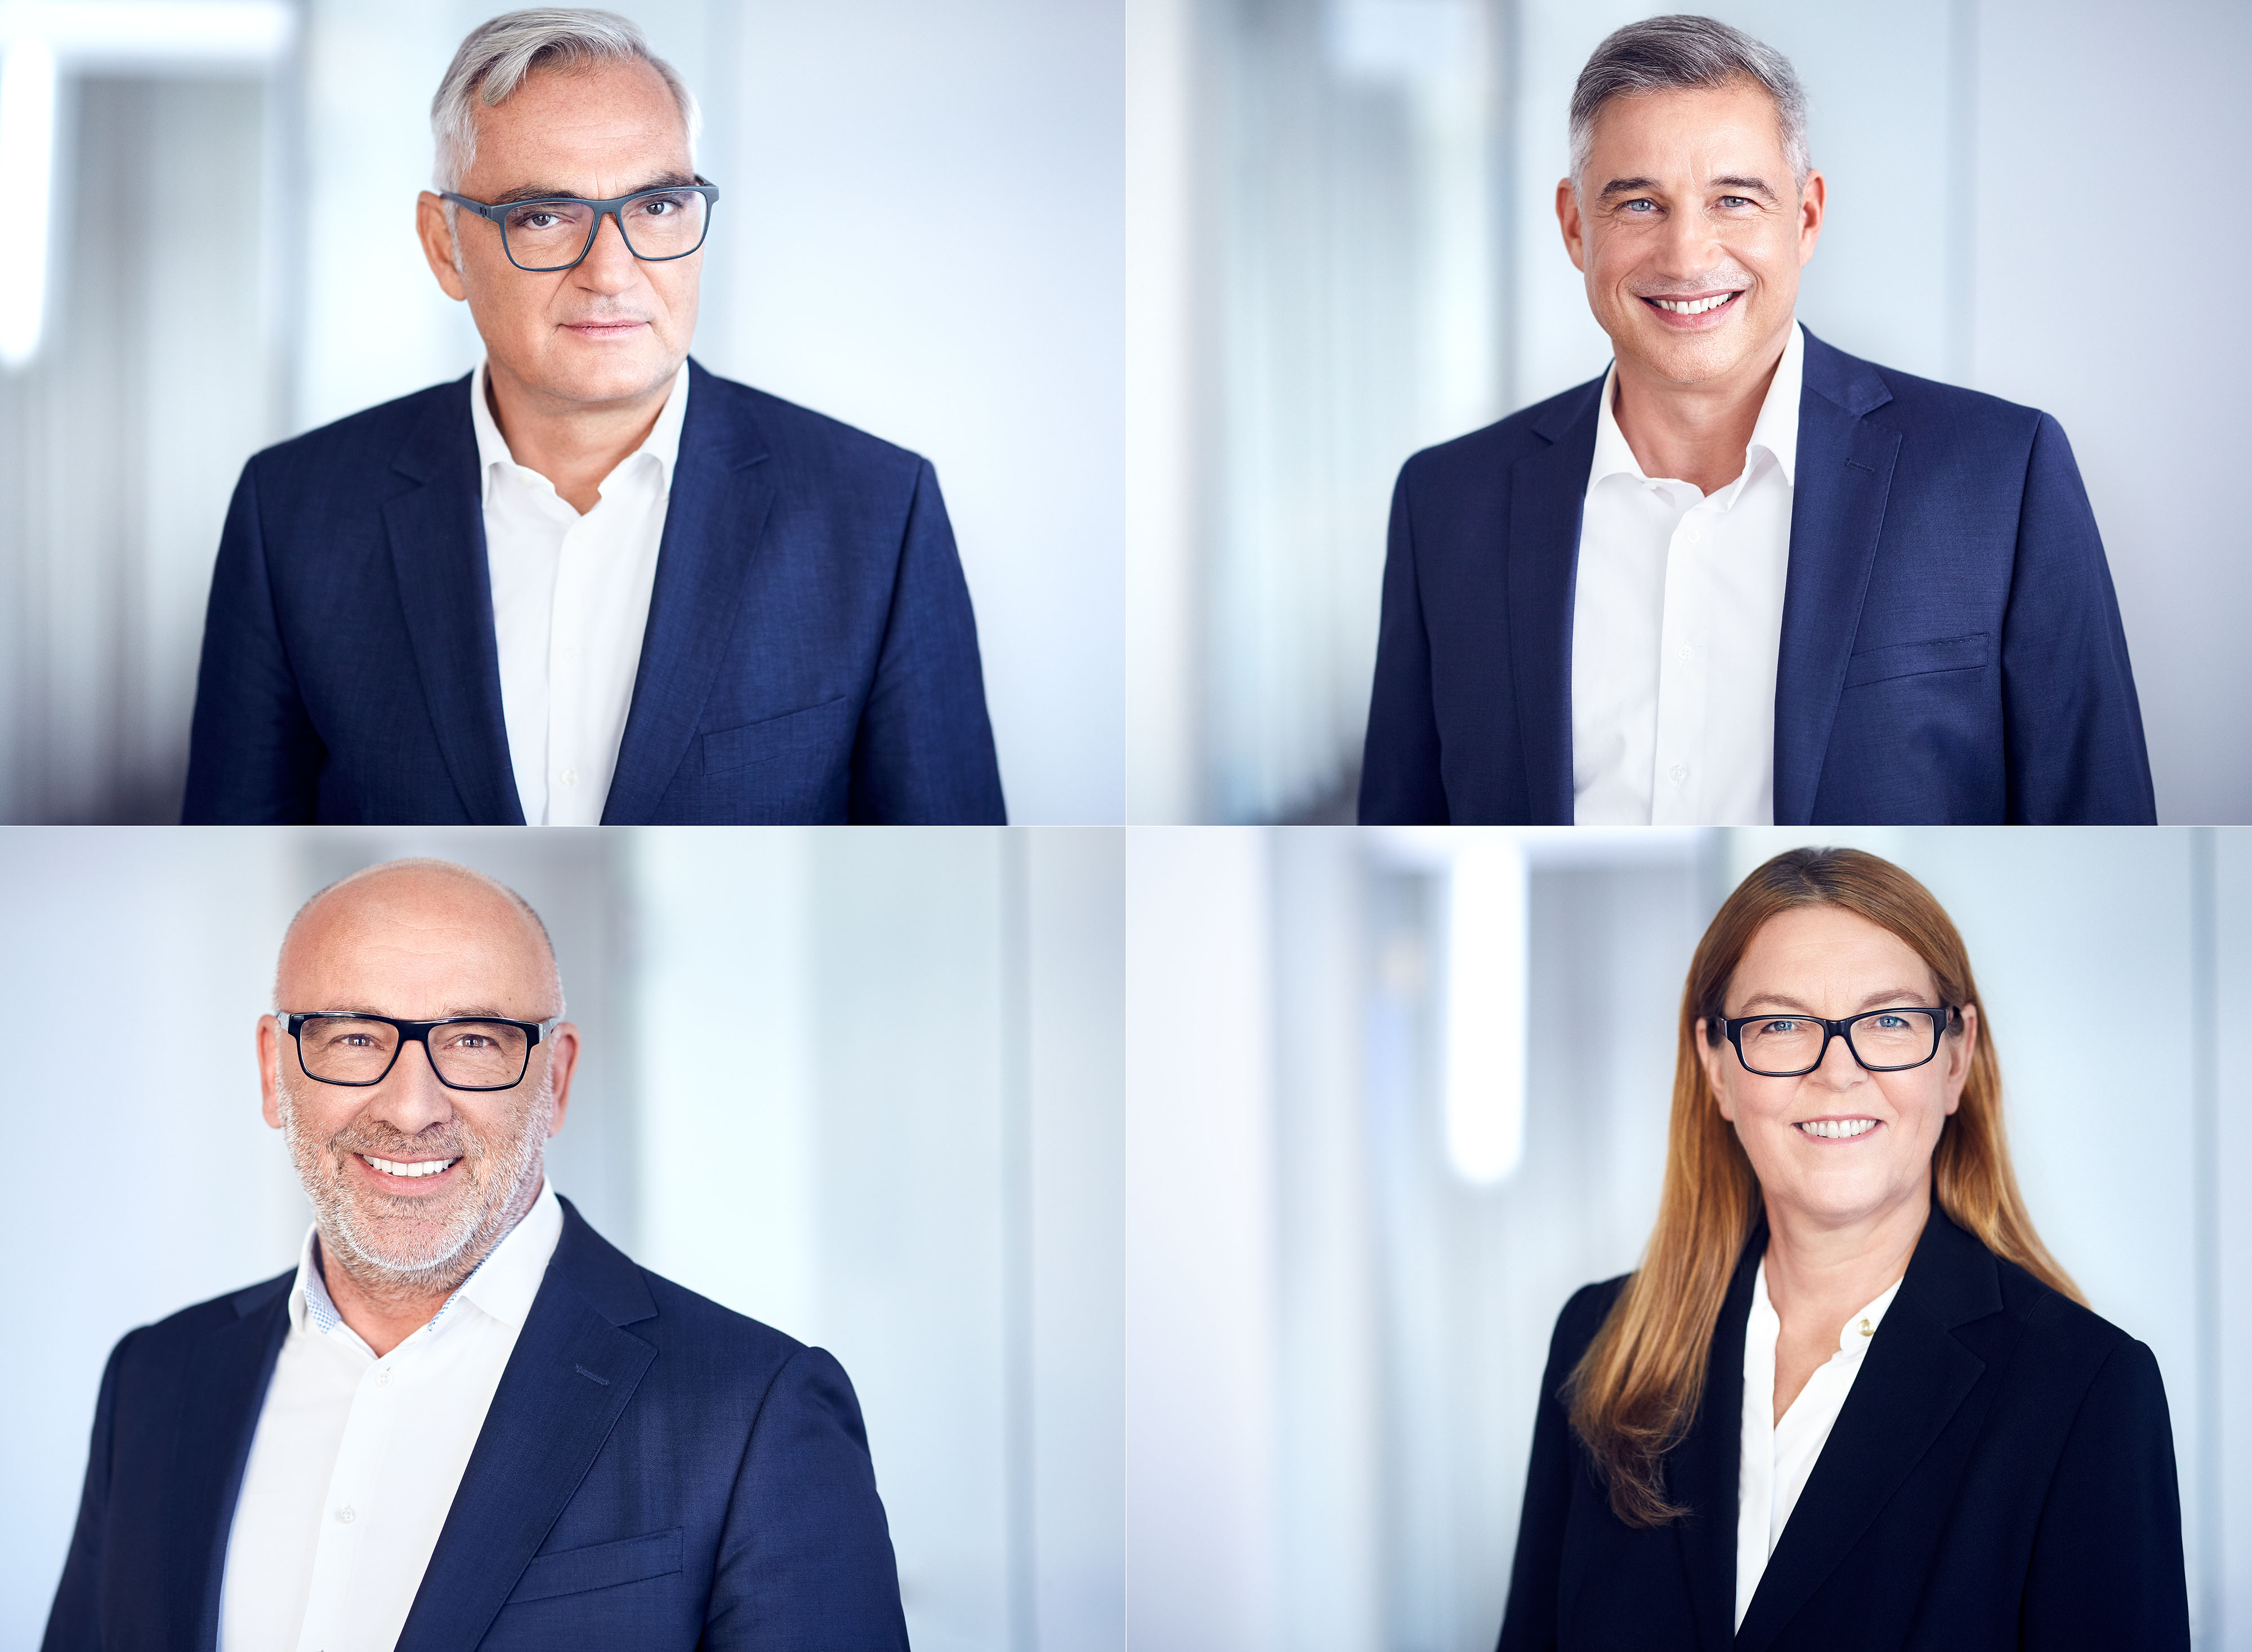 PWR Development GmbH, Mitarbeiterportrait, Businessportrait, Headshot, Corporate Photographer, Executive Portrait © Benno Kraehahn, Berlin